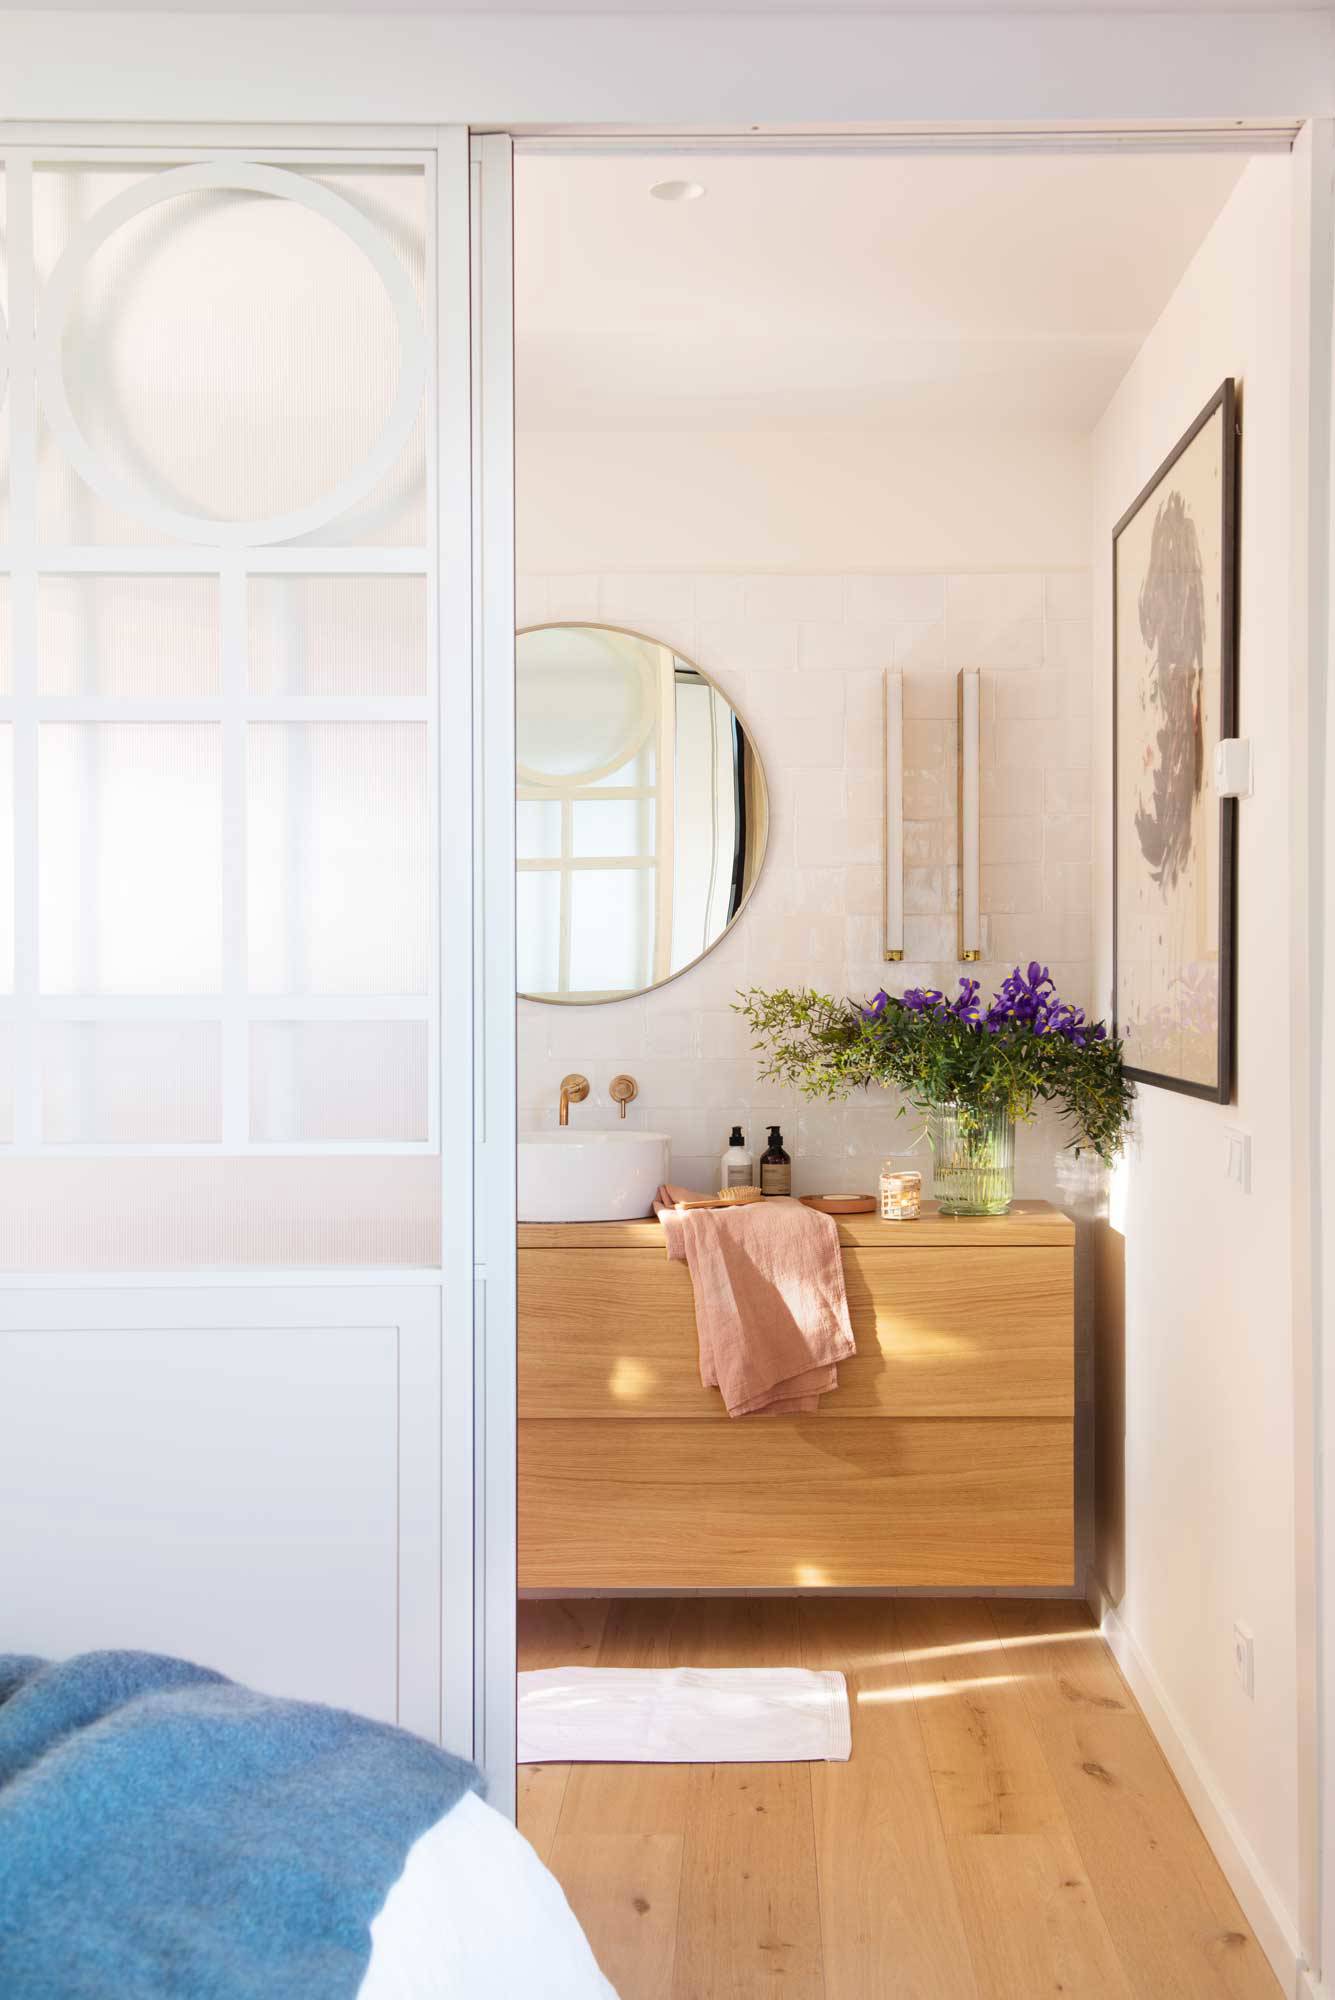 Baño pequeño con puerta corredera blanca y mueble de madera.